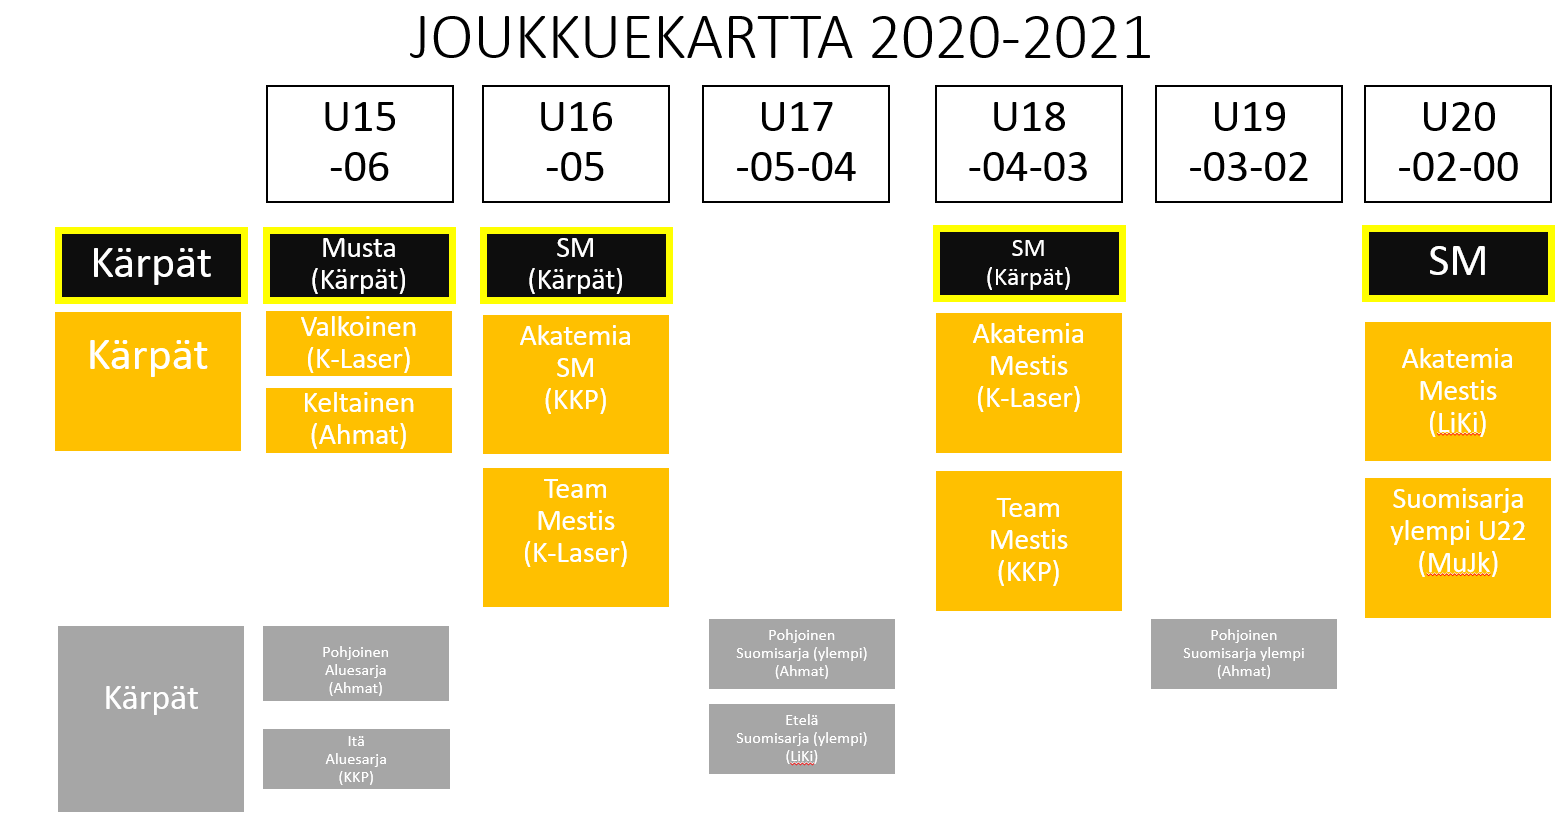 Seurayhteisön joukkuekartta kaudelle 2020-2021